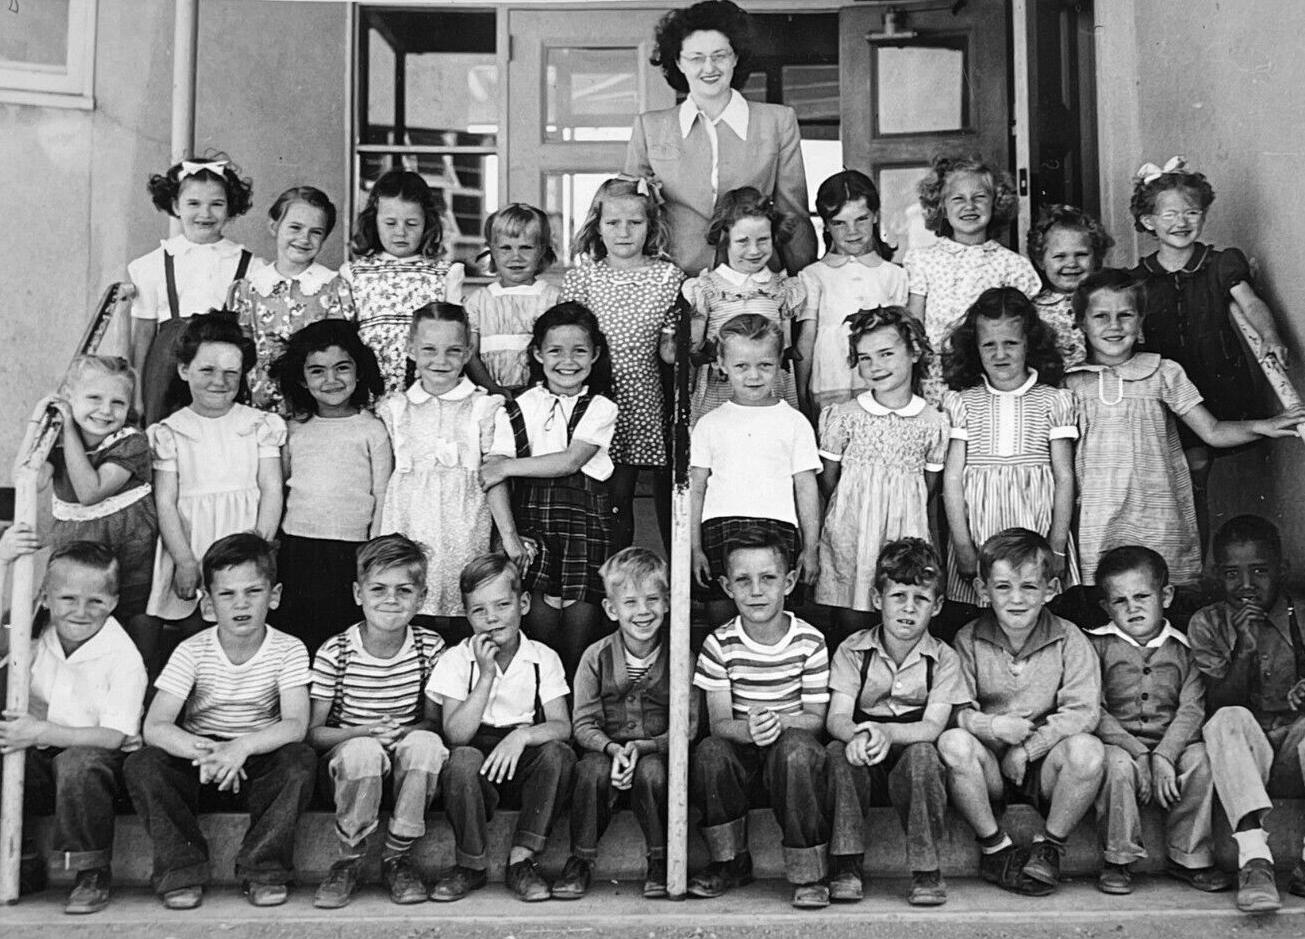 1940s schoolwear